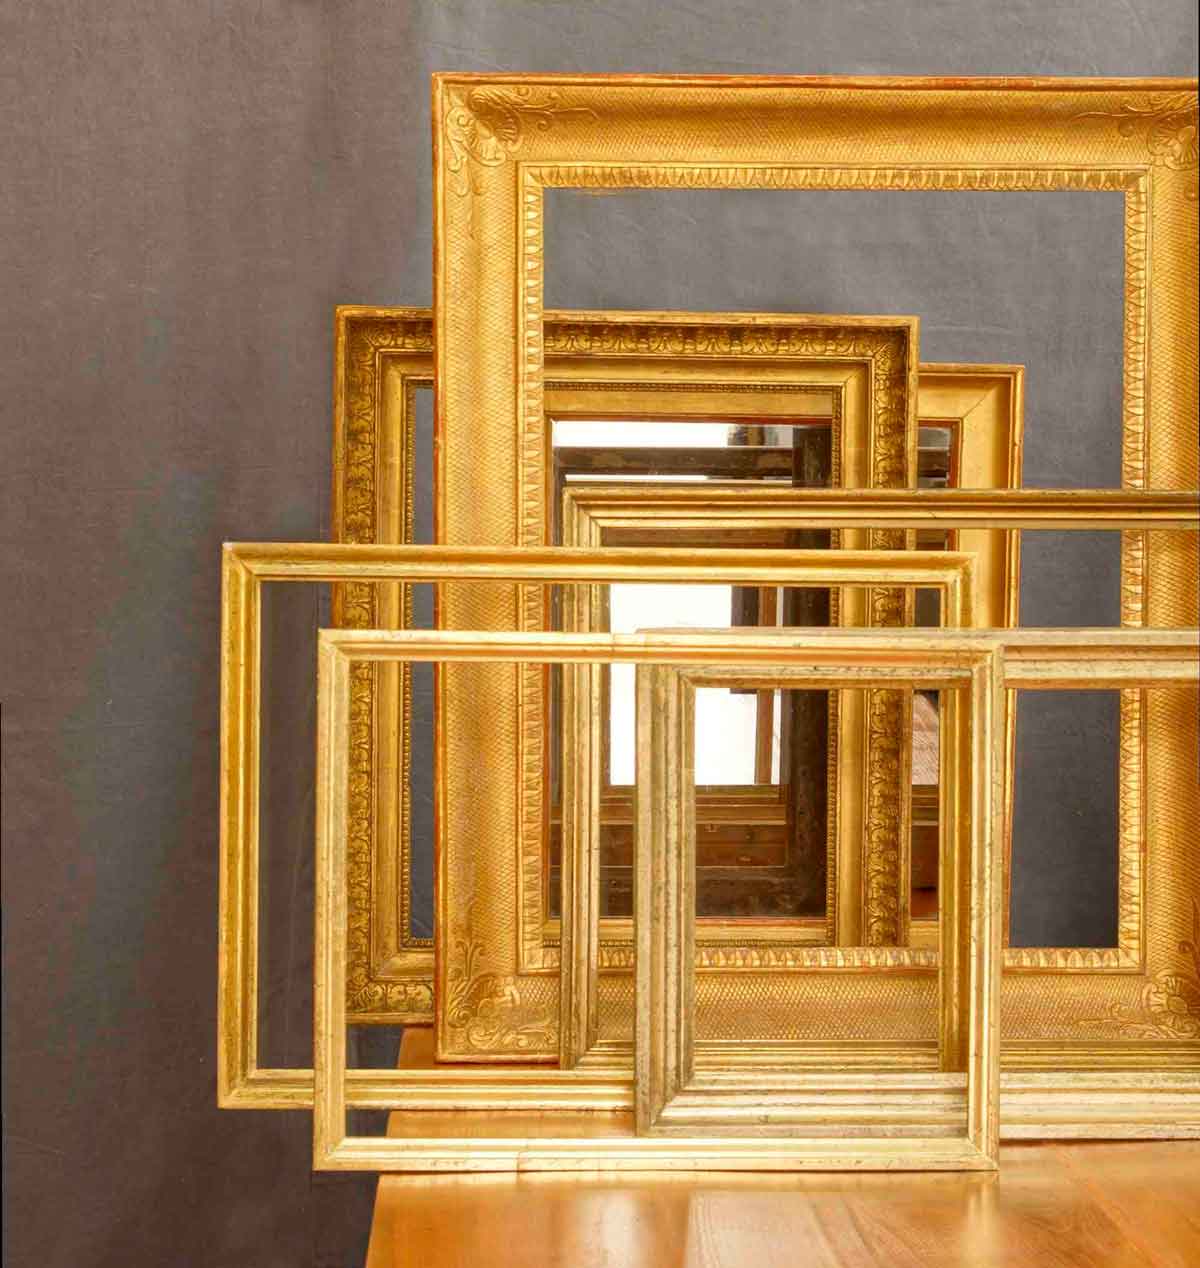 Auf dem Bild sind echte blattvergoldete Rahmen aus dem 19. Jahrhundert zu sehen